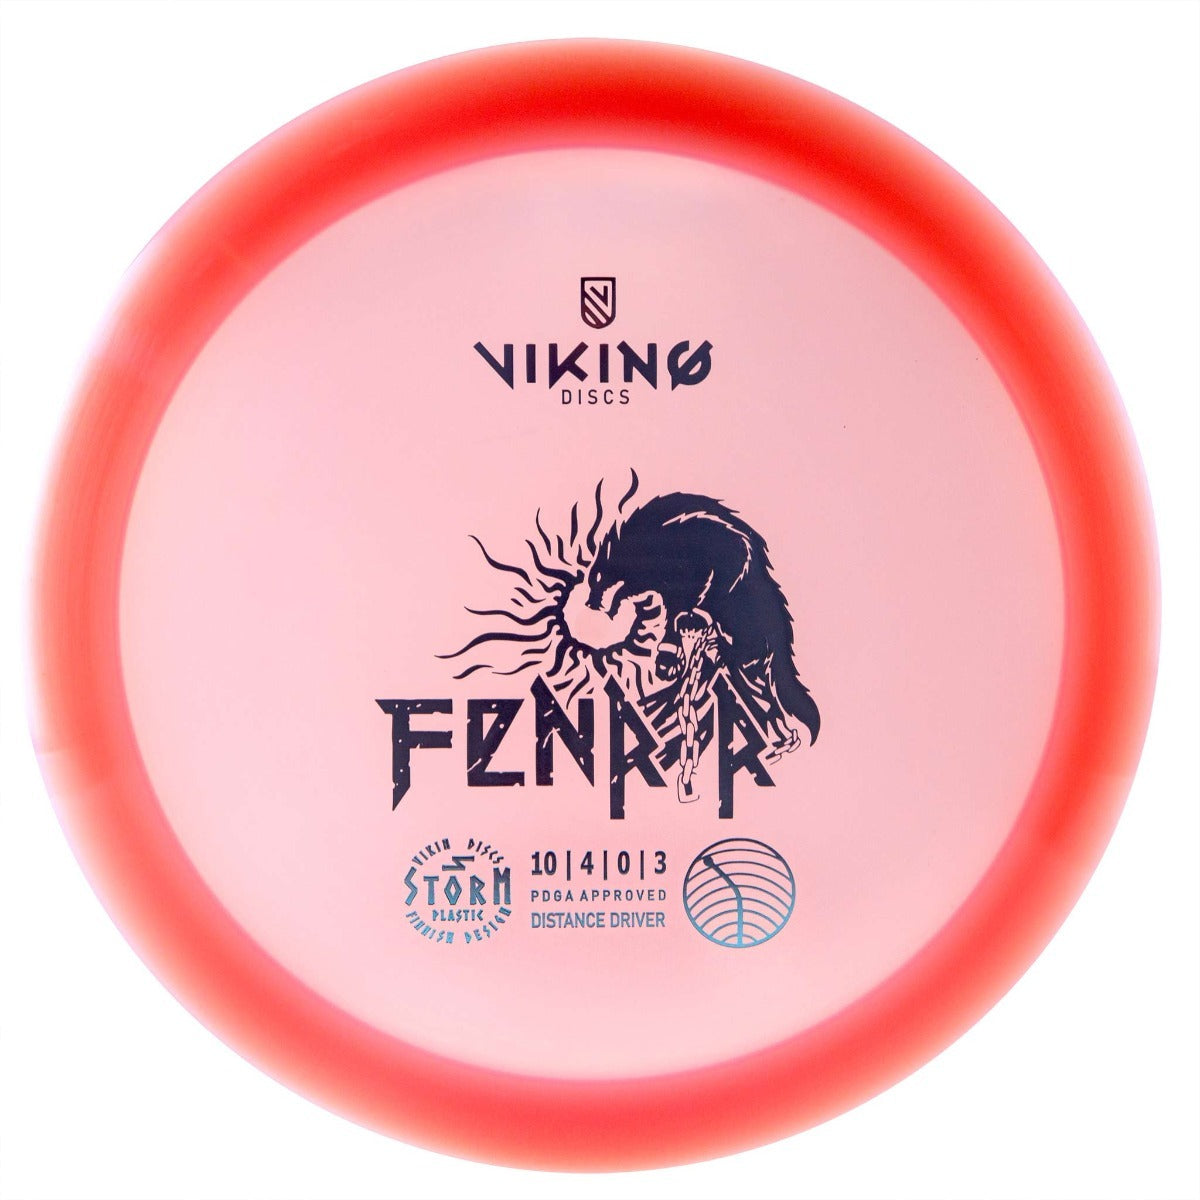 Viking Discs Fenrir - Storm